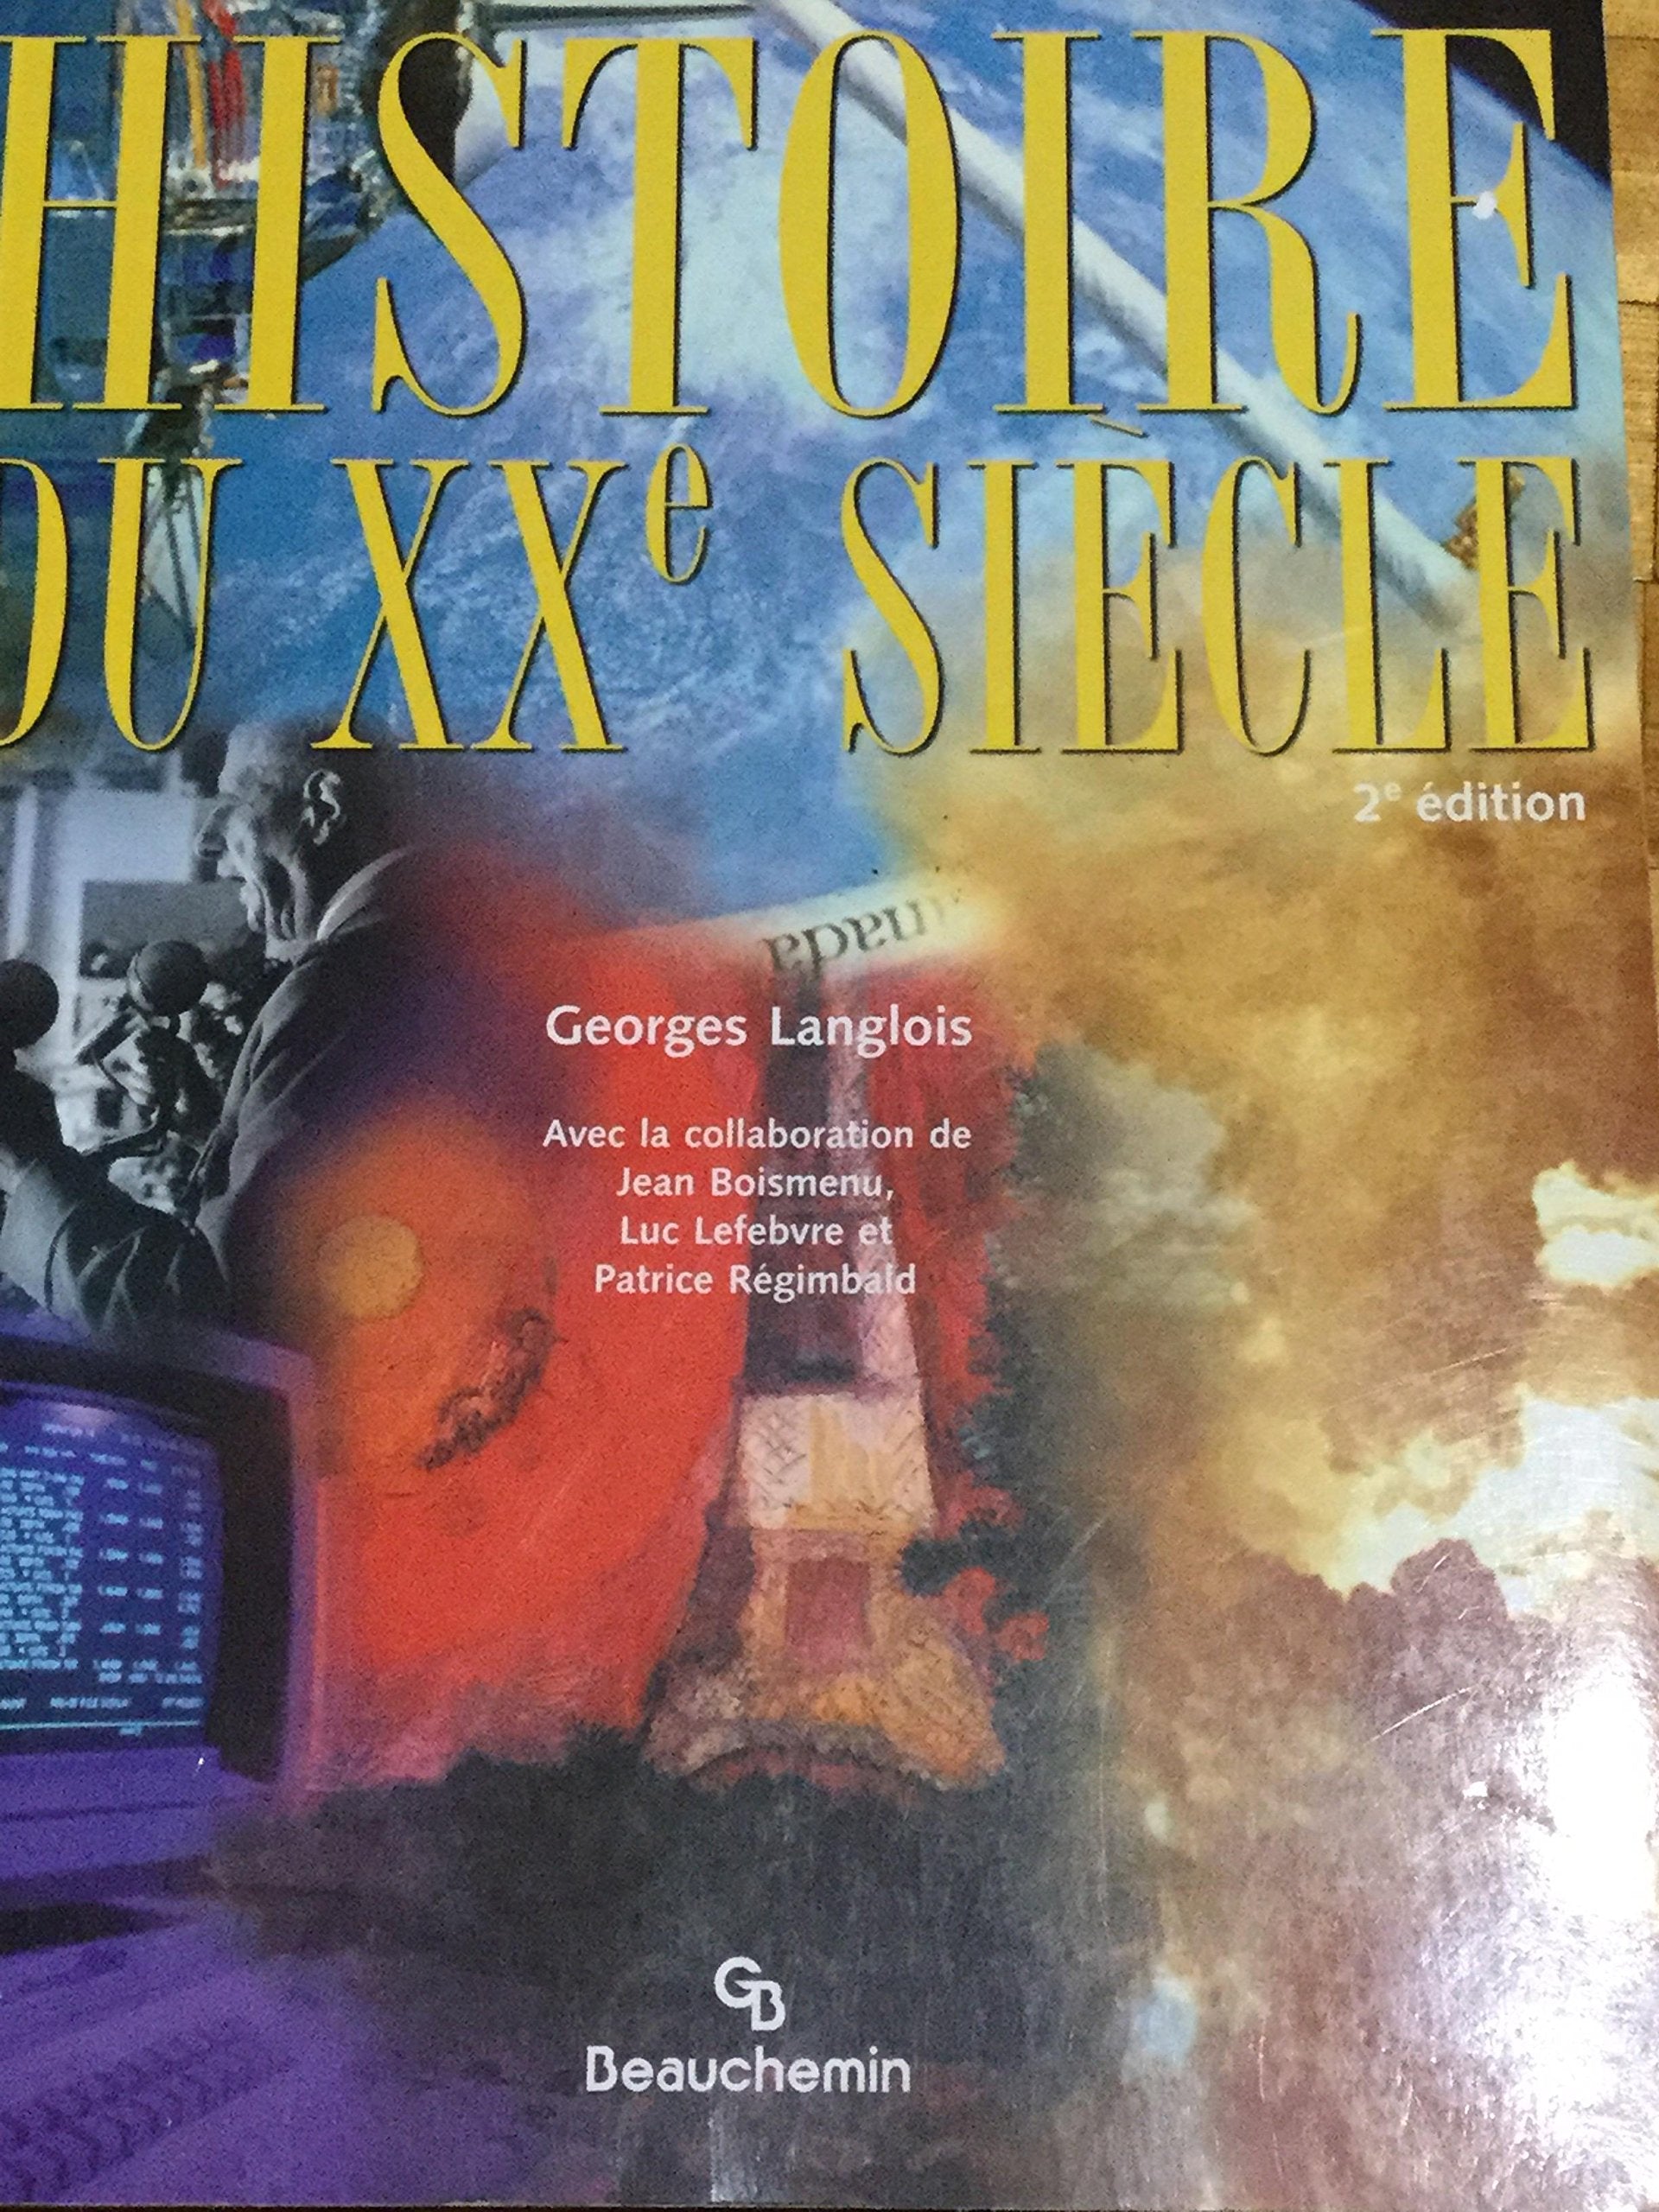 Histoire du XXe Siècle (2e édition) - Georges Langlois